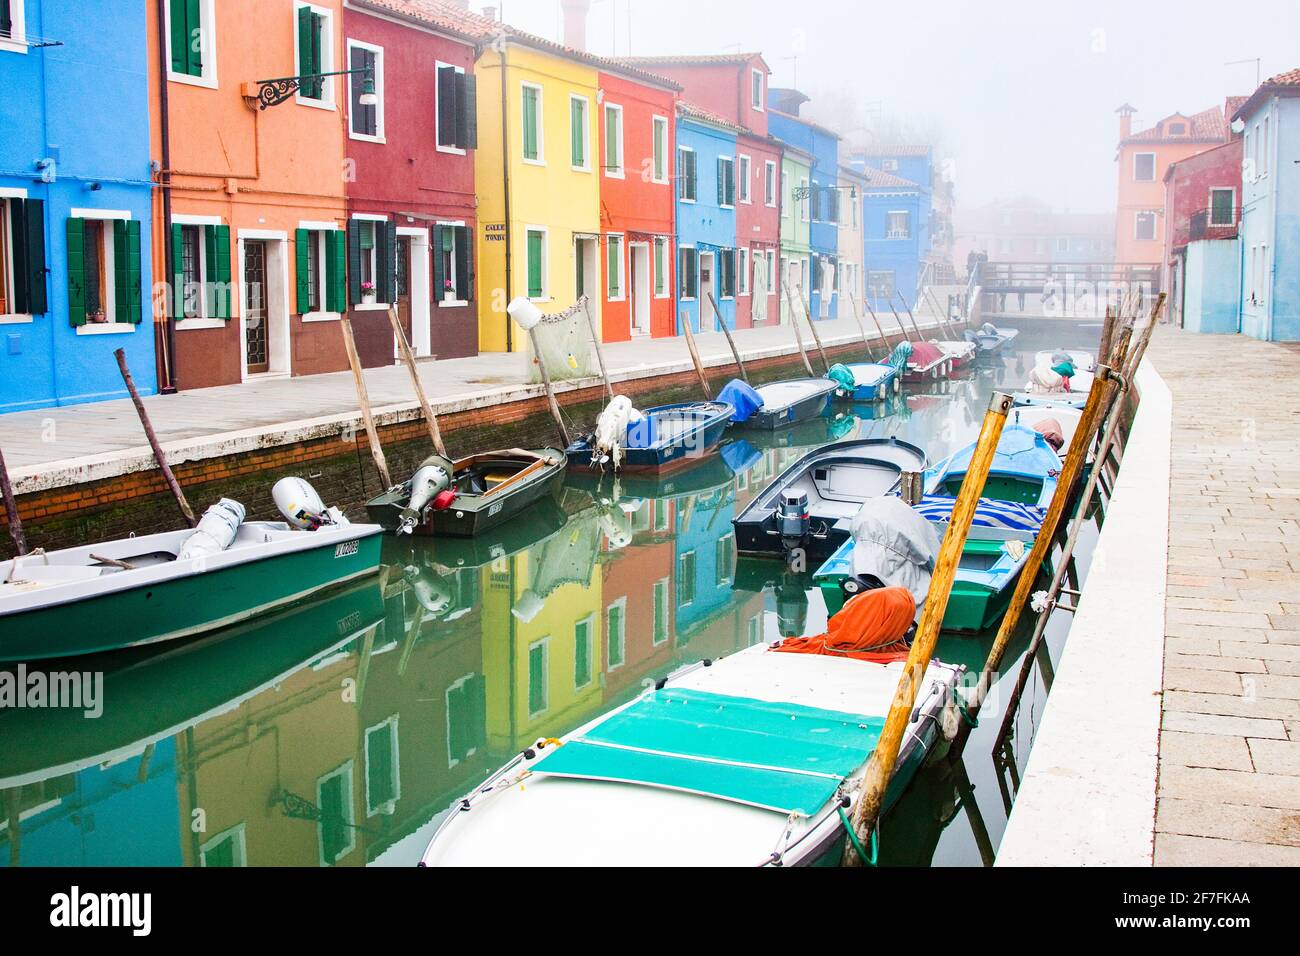 Casas de pescadores de colores brillantes en Burano, Ciudad Metropolitana de Venecia, Patrimonio de la Humanidad de la UNESCO, Veneto, Italia, Europa Foto de stock